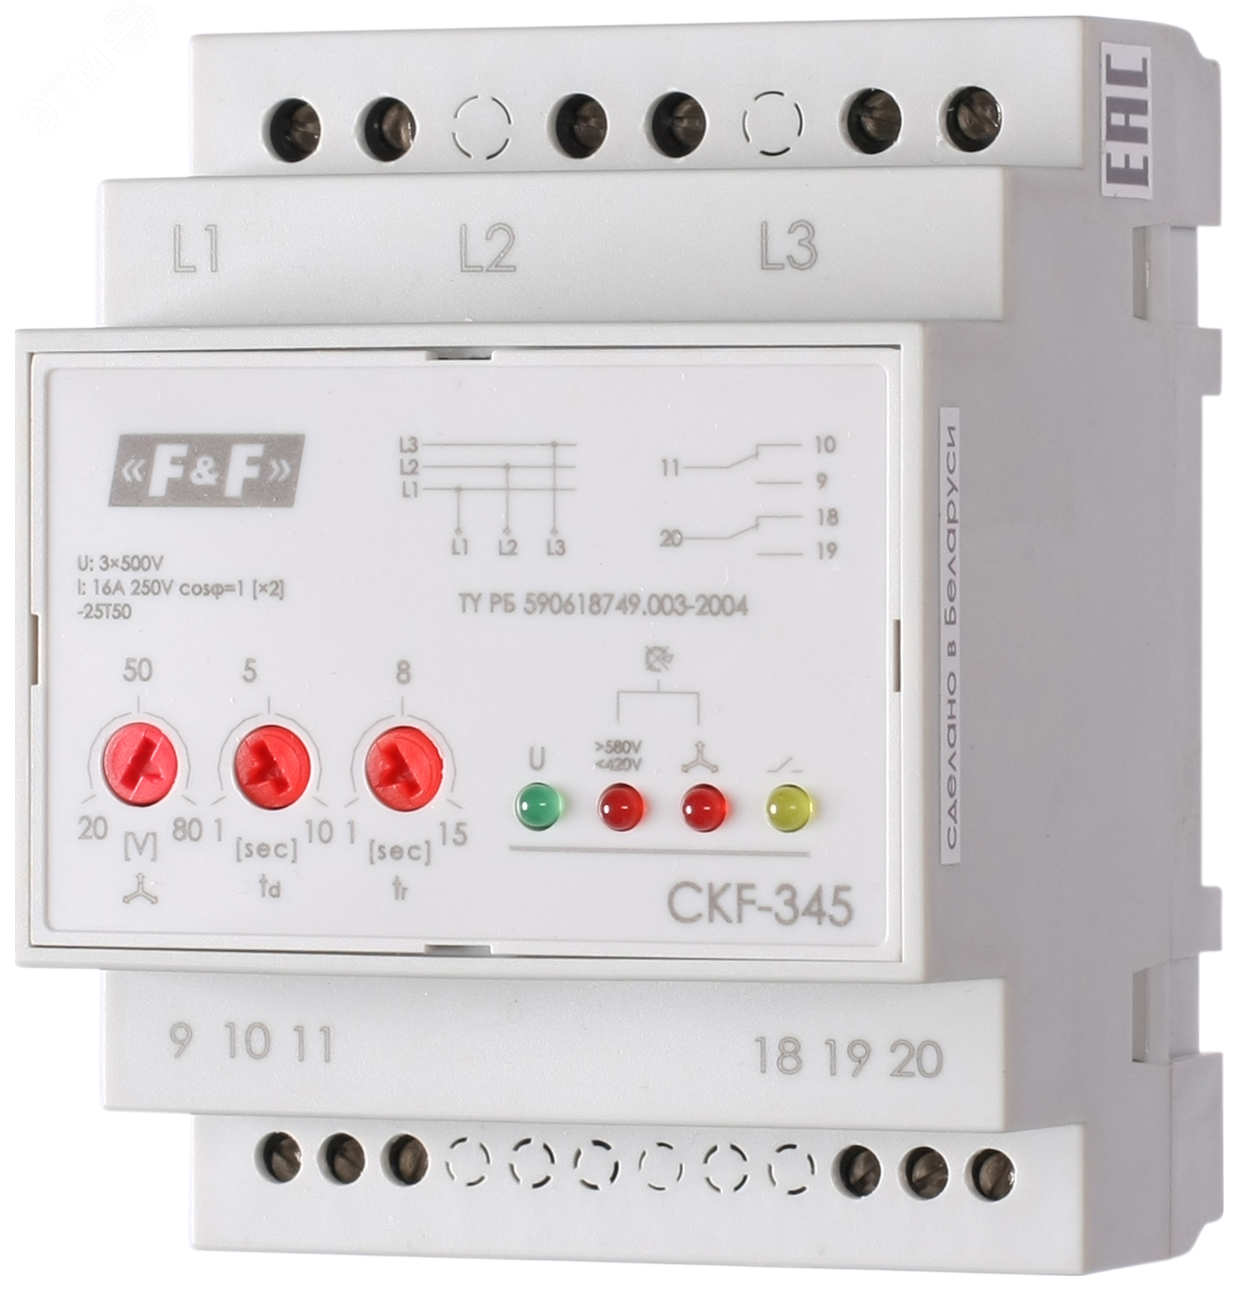 Реле контроля фаз CKF-345 EA04.004.001 Евроавтоматика F&F